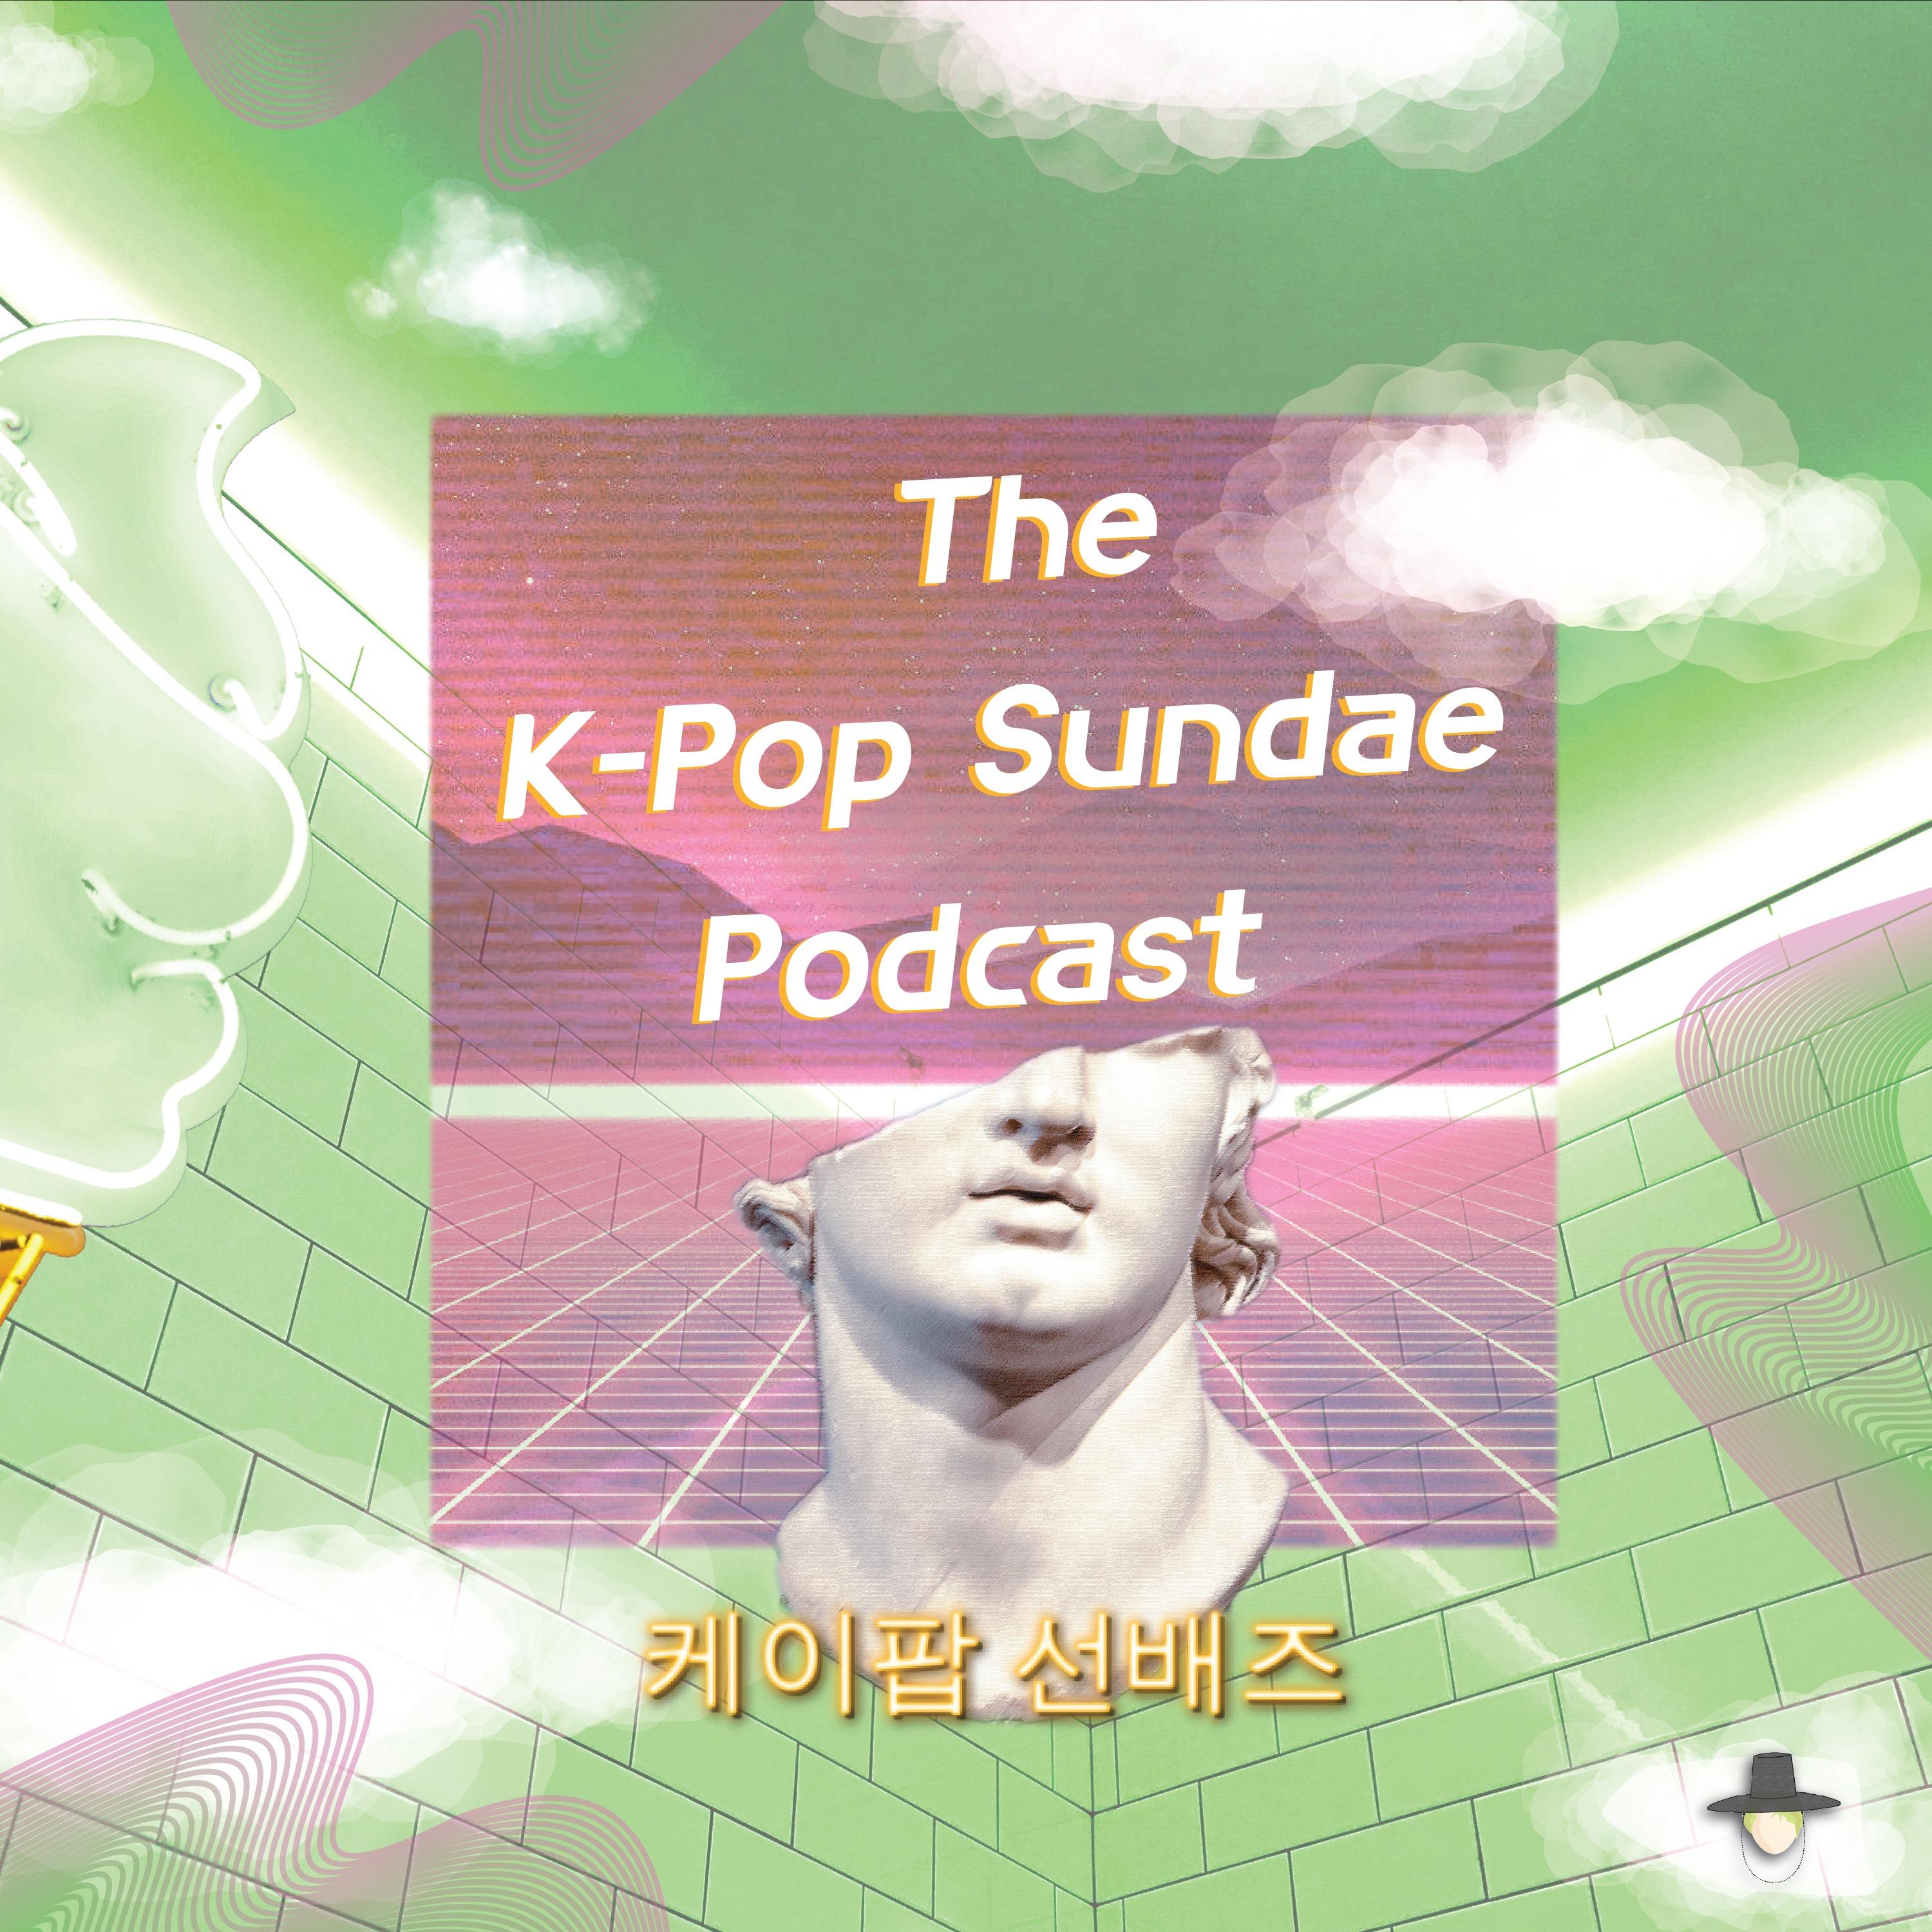 The K-Pop Sundae Podcast